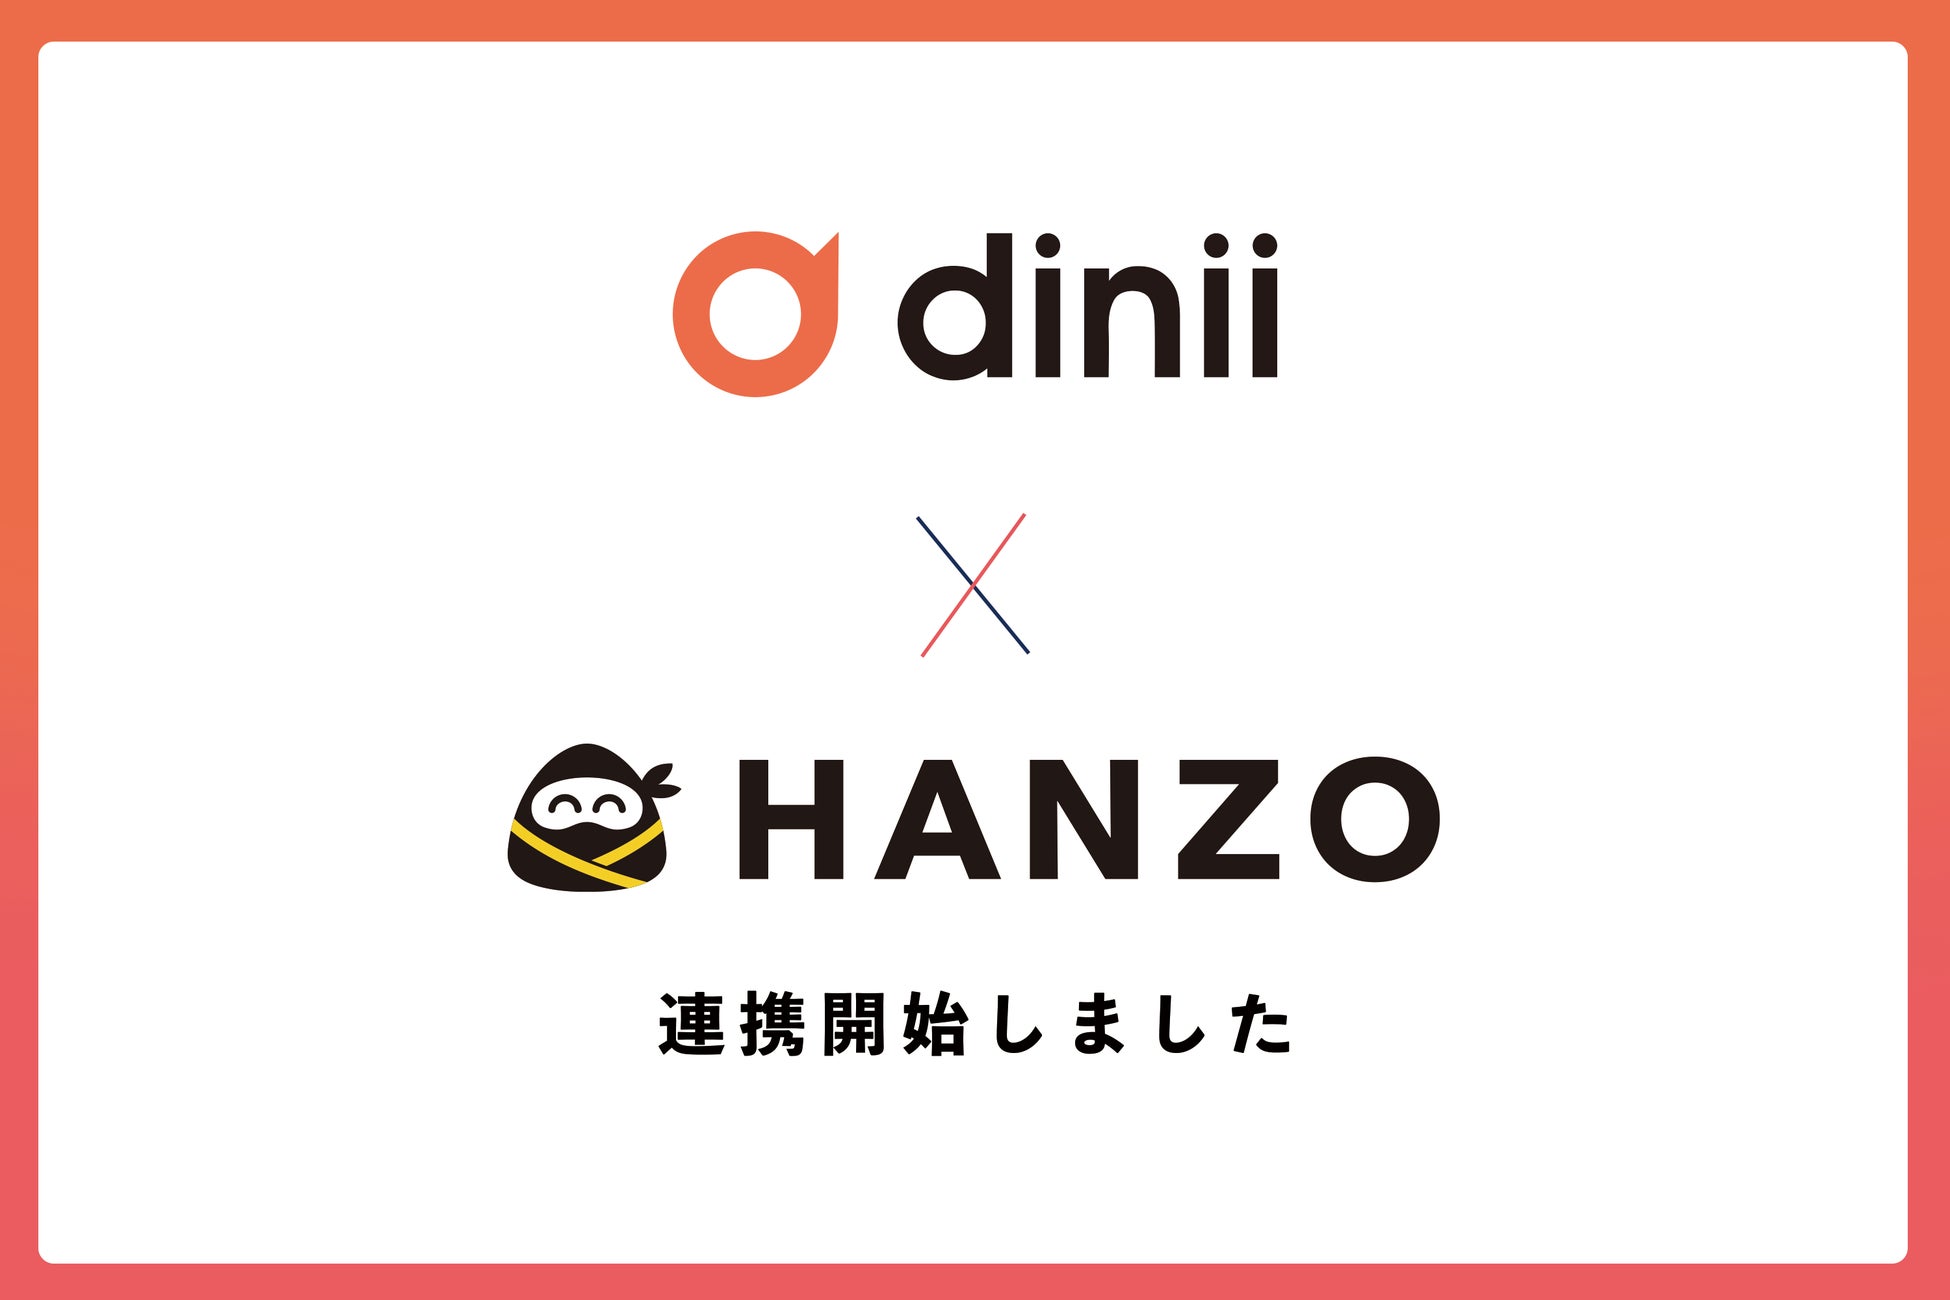 飲食店の業務を効率化するHANZOシリーズが「ダイニー」と連携開始